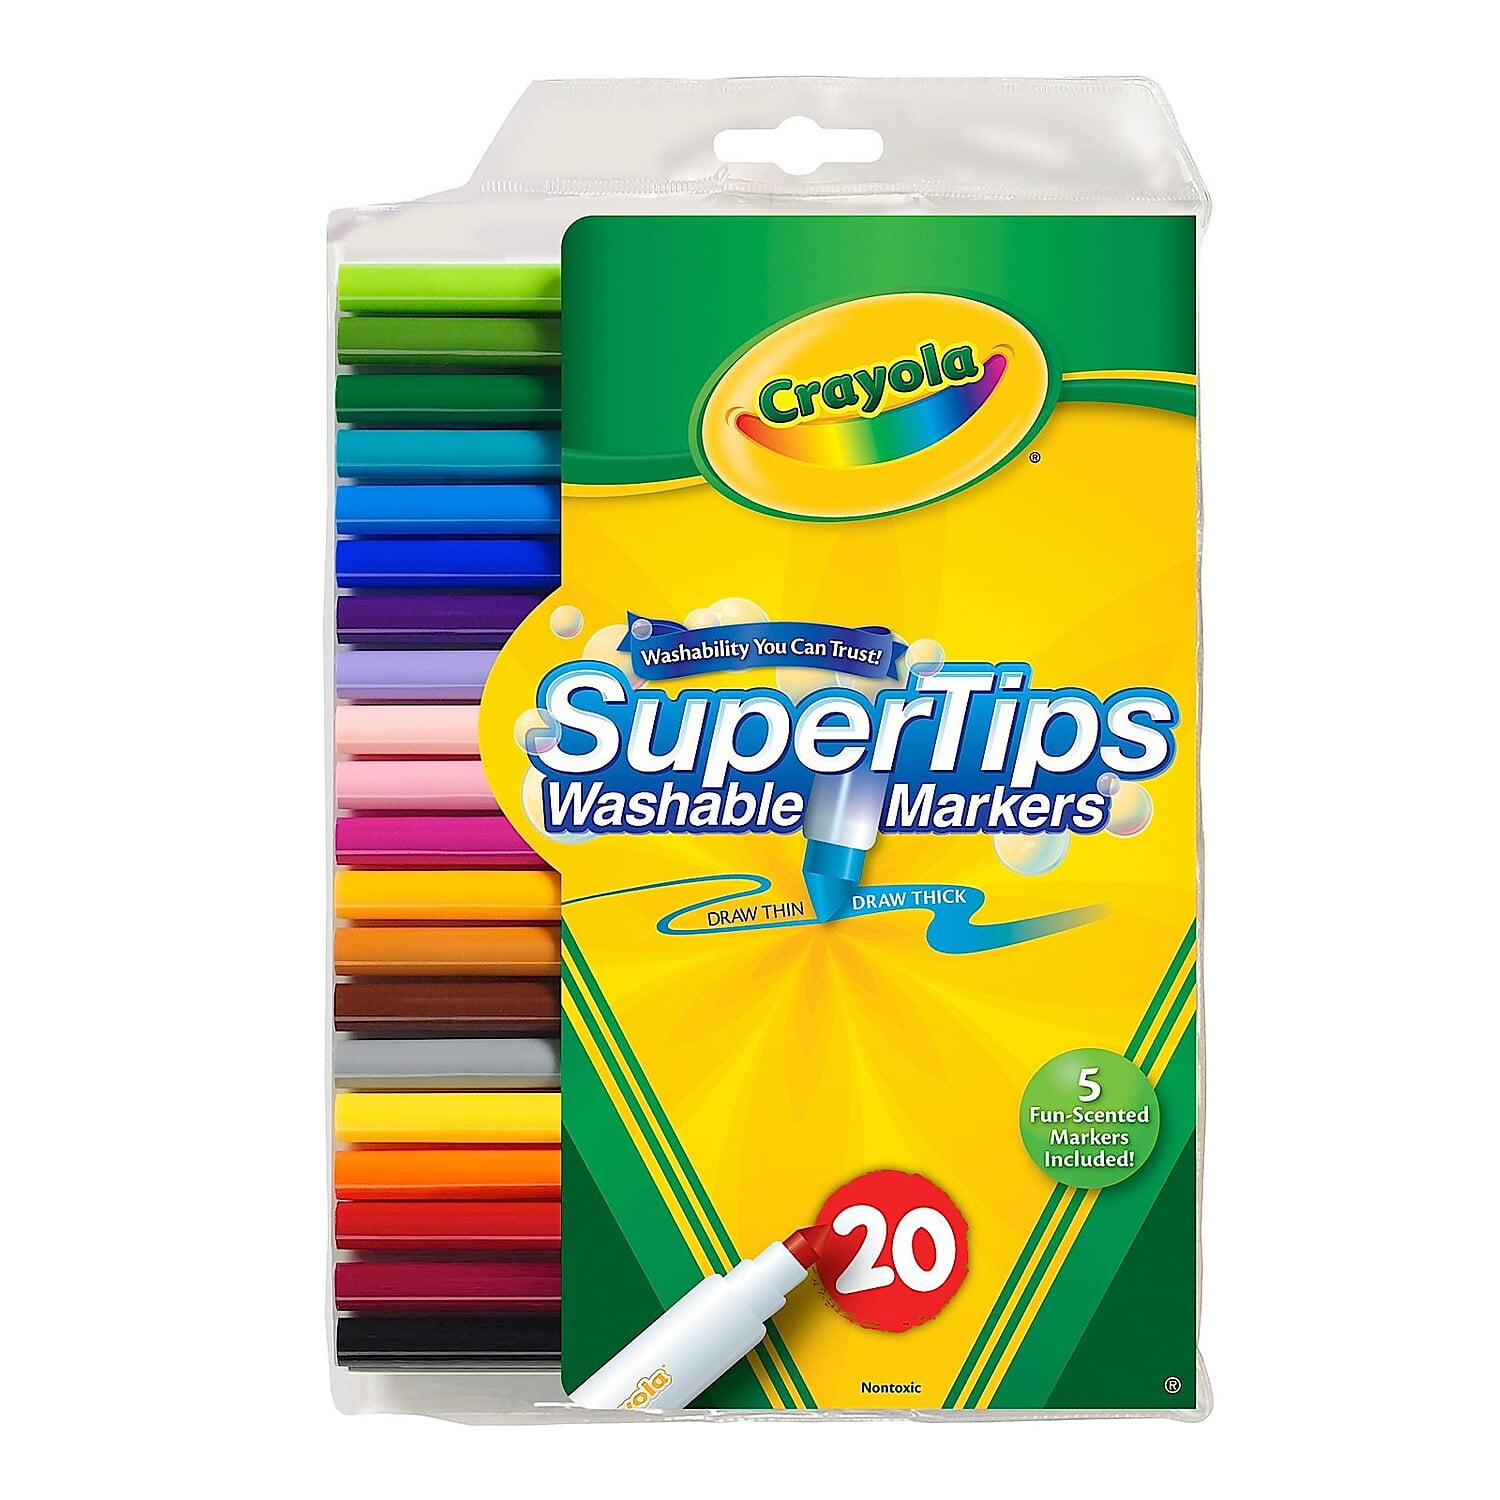 Crayola 20 Super Tips Washable Markers, 1 - Kroger